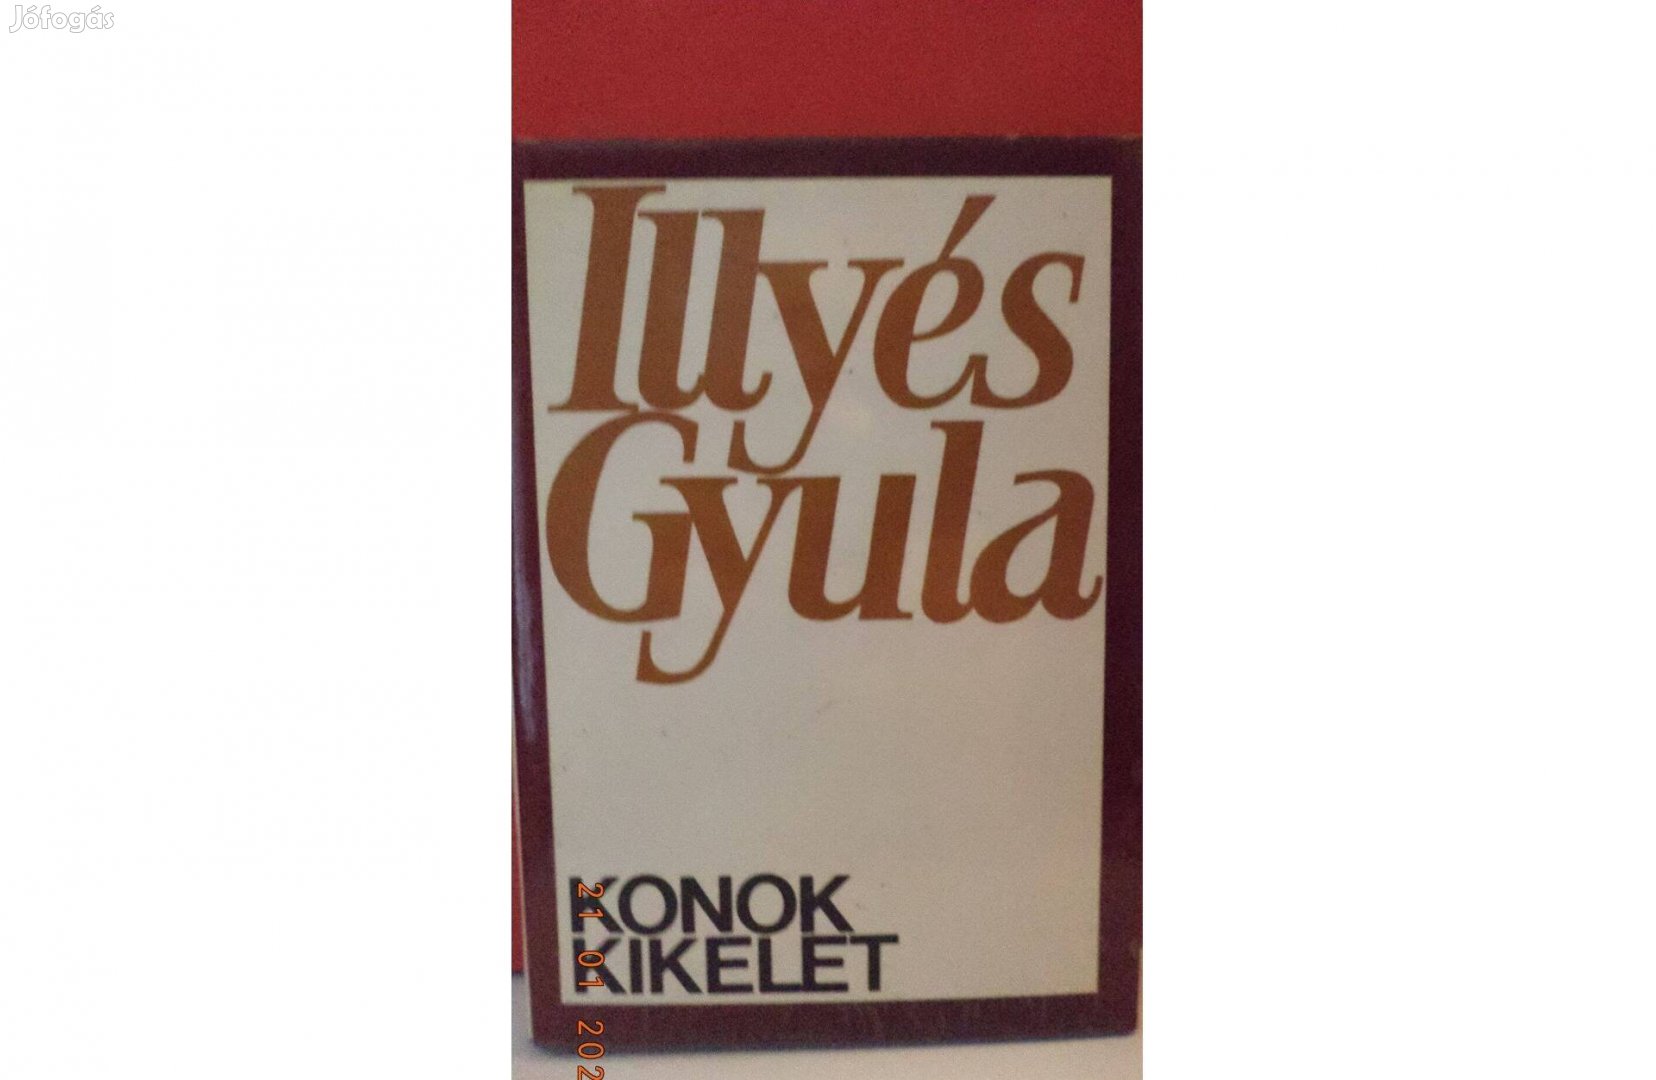 Illyés Gyula: Konok kikelet